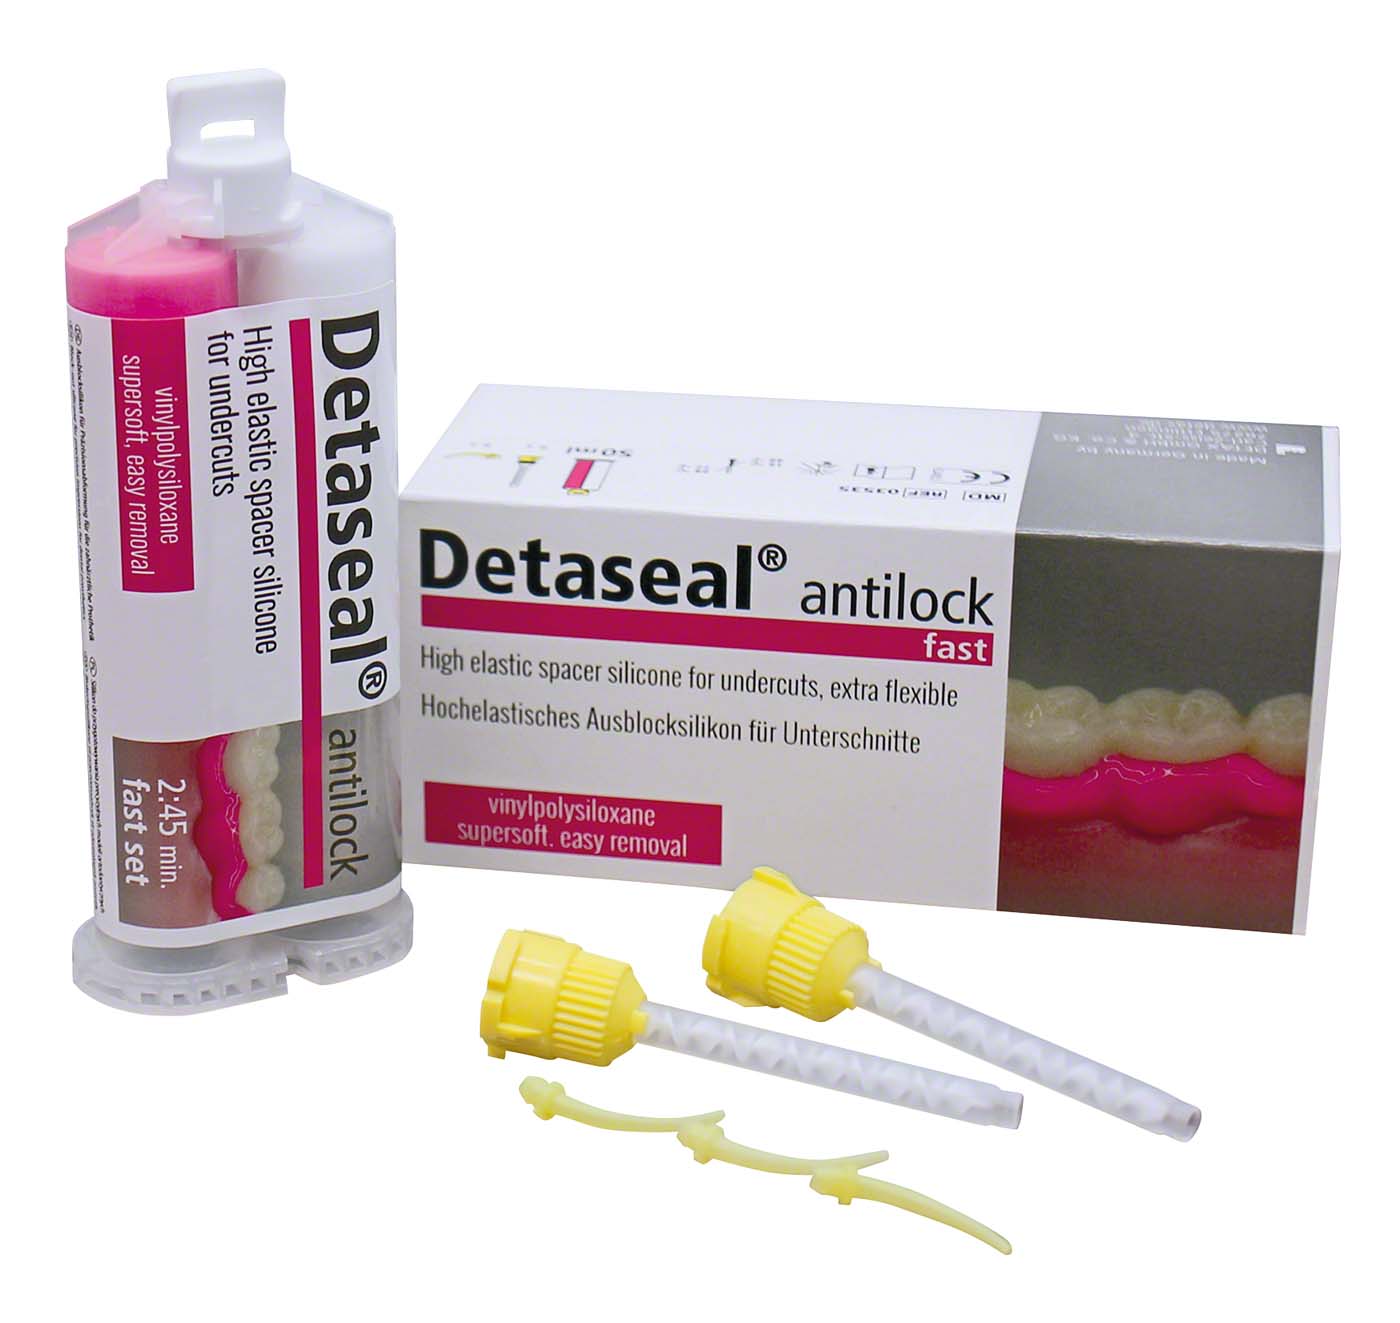 Detaseal® antilock DETAX